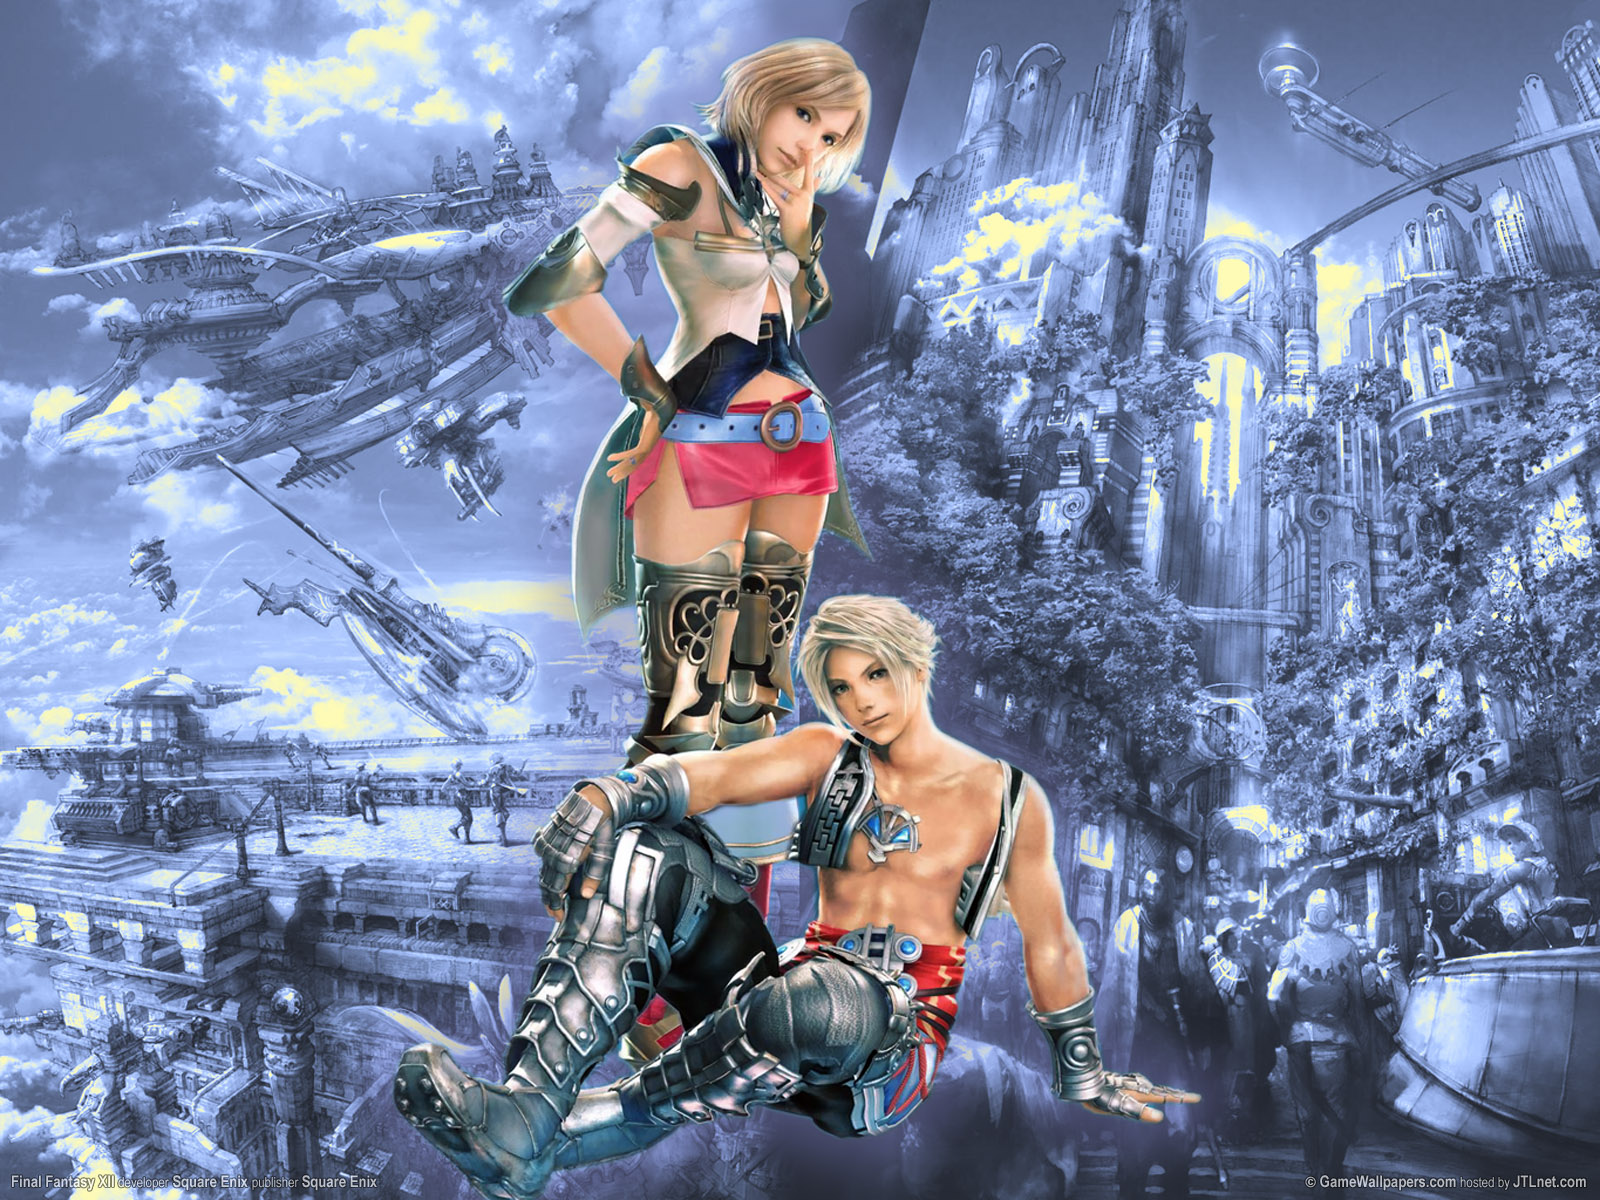 Final Fantasy backgrounds